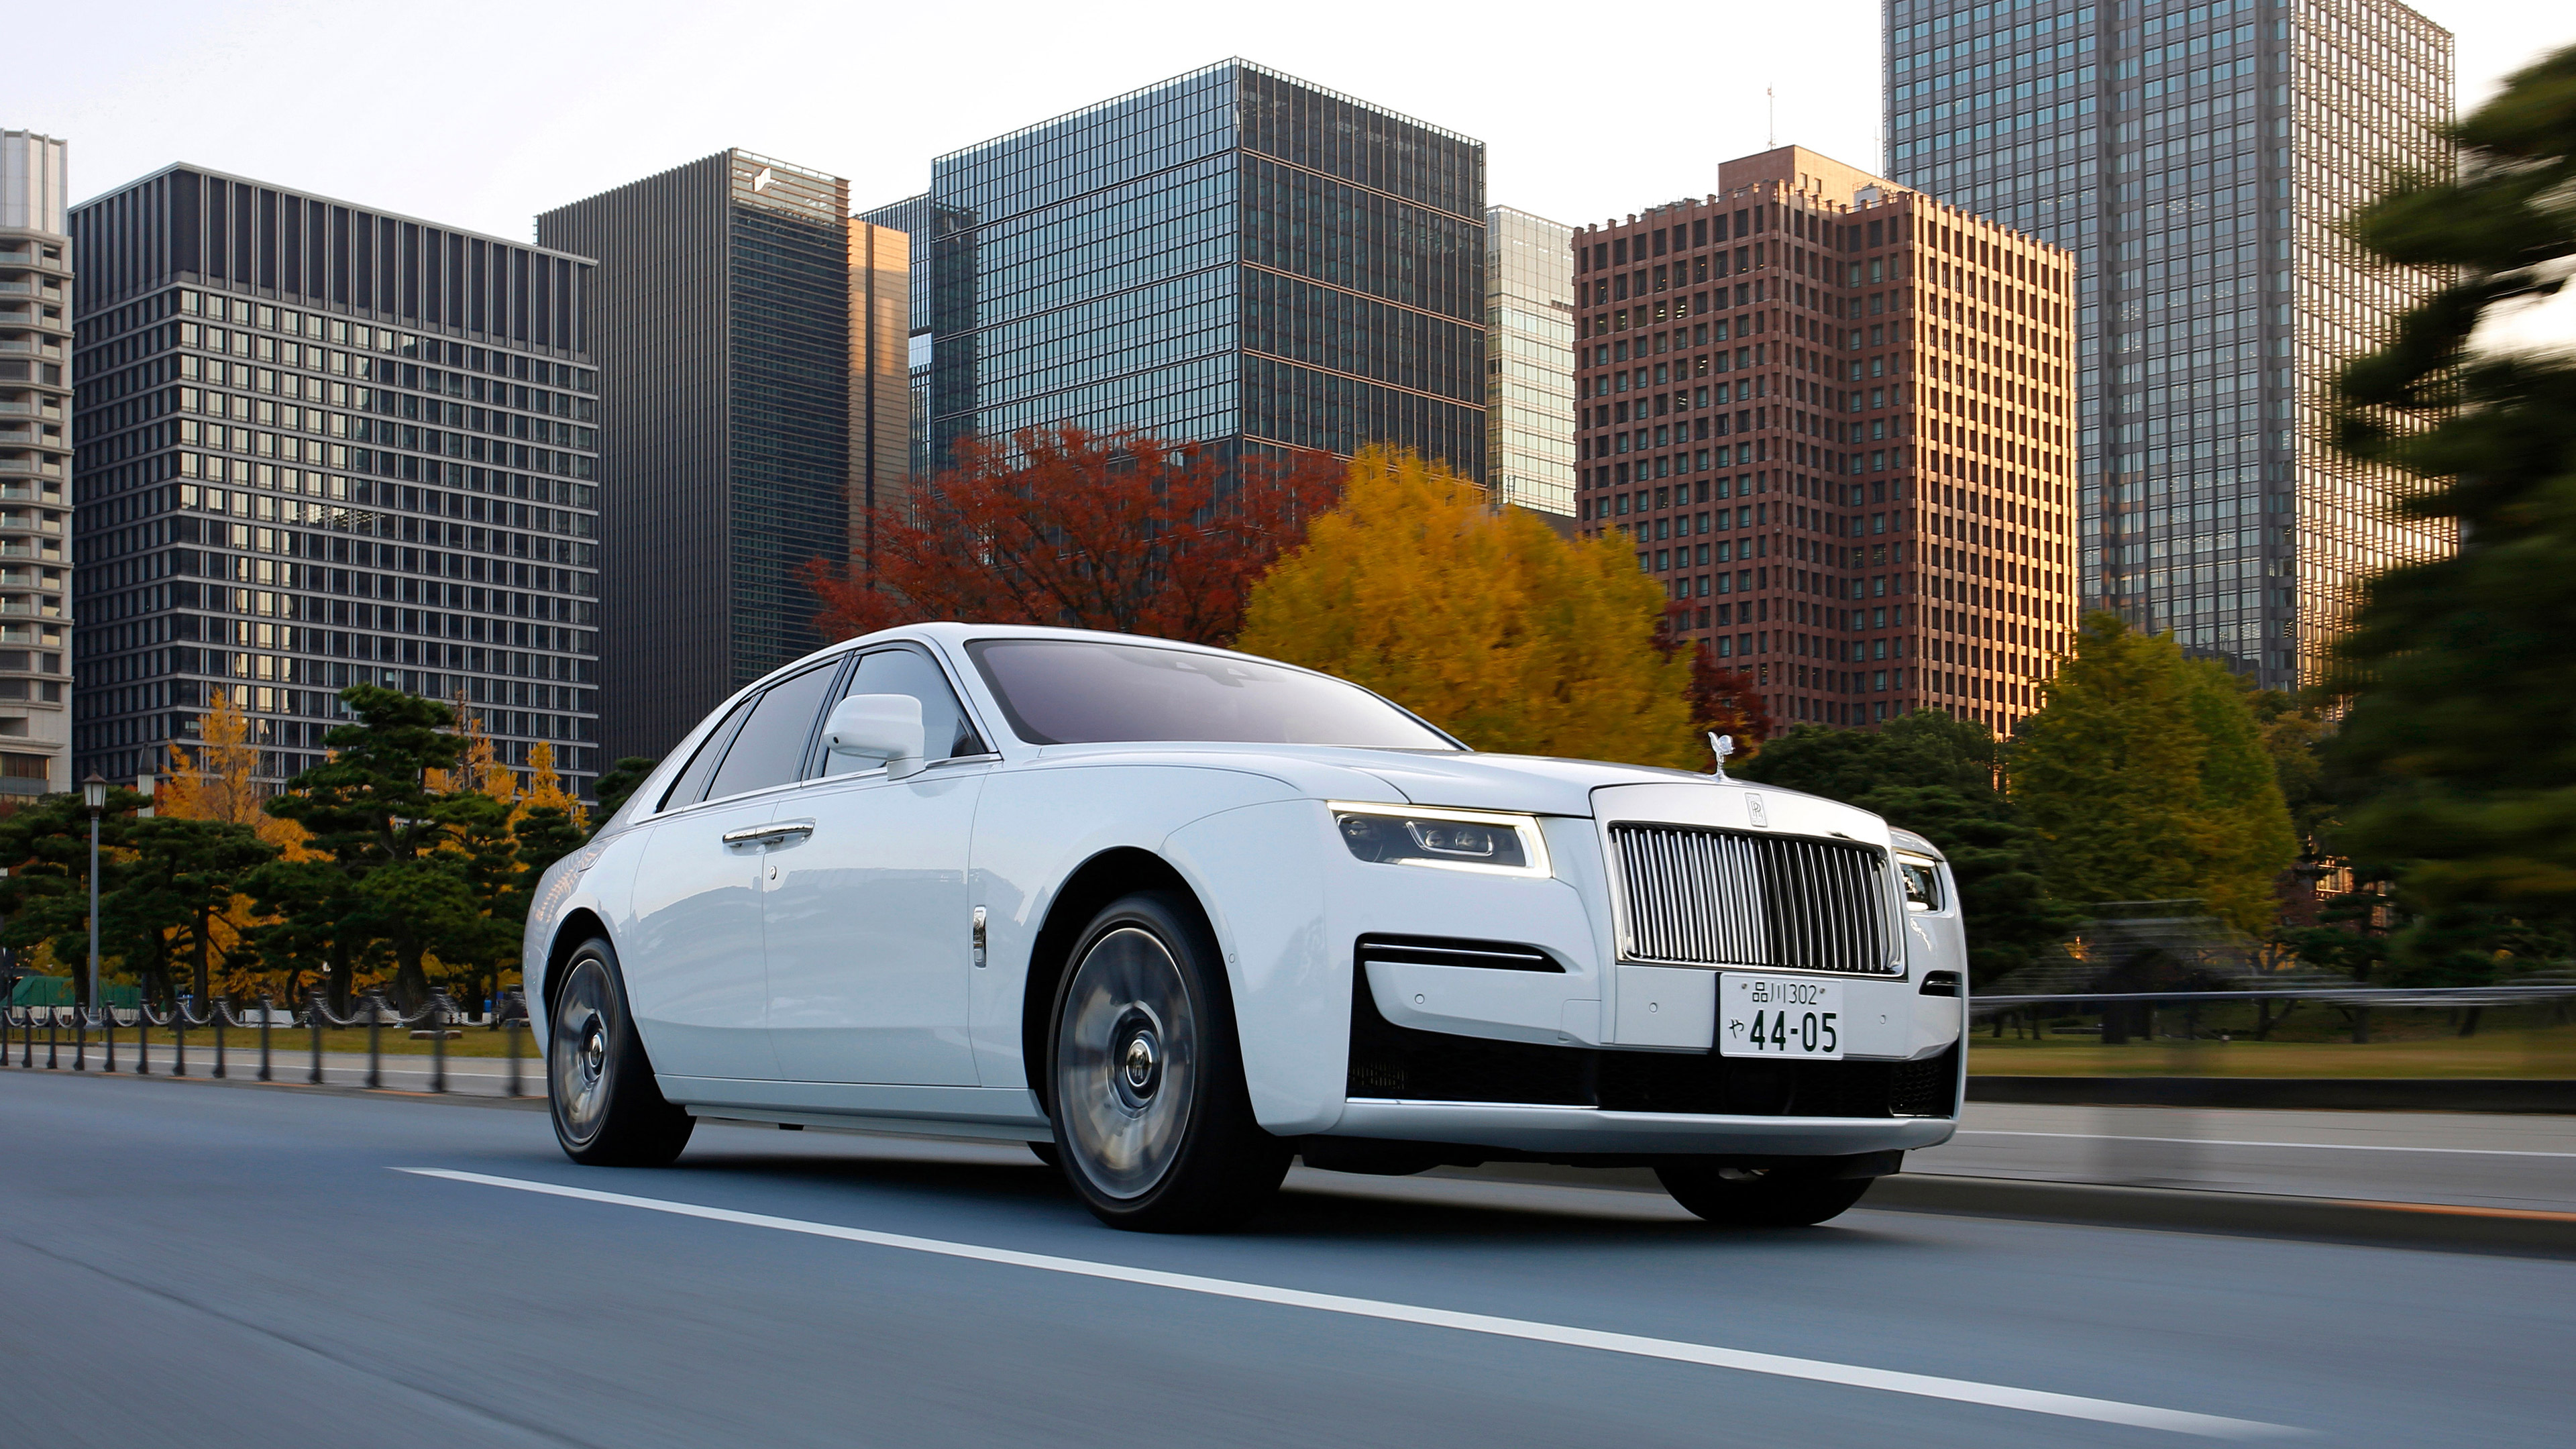  2021 Rolls-Royce Ghost Wallpaper.